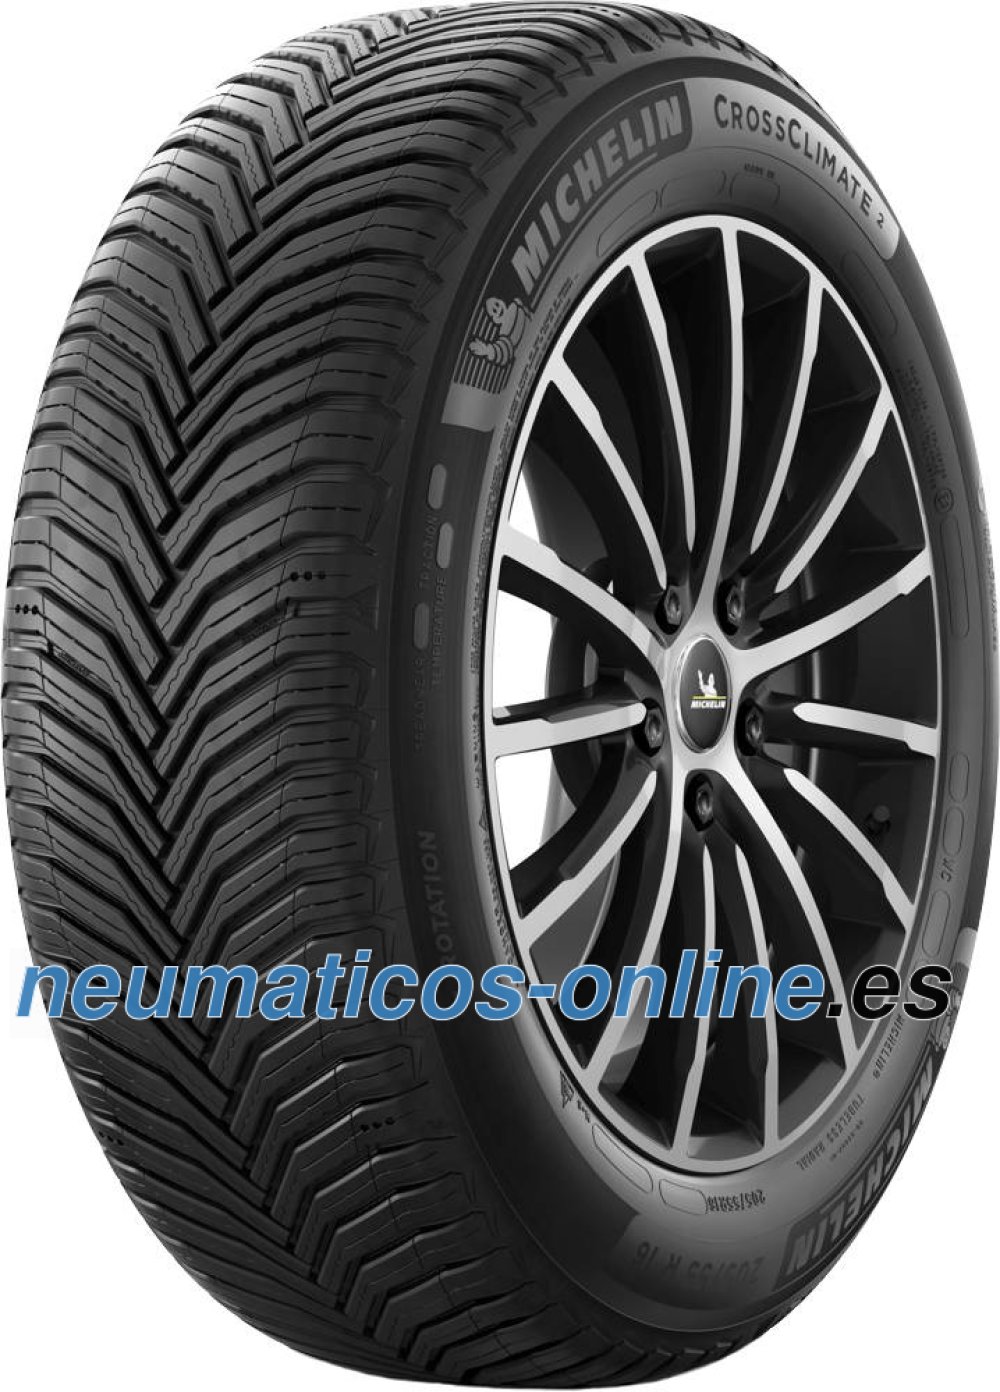 Es carro pantalones Michelin CrossClimate 2 215/60 R16 99H XL- neumaticos-online.es